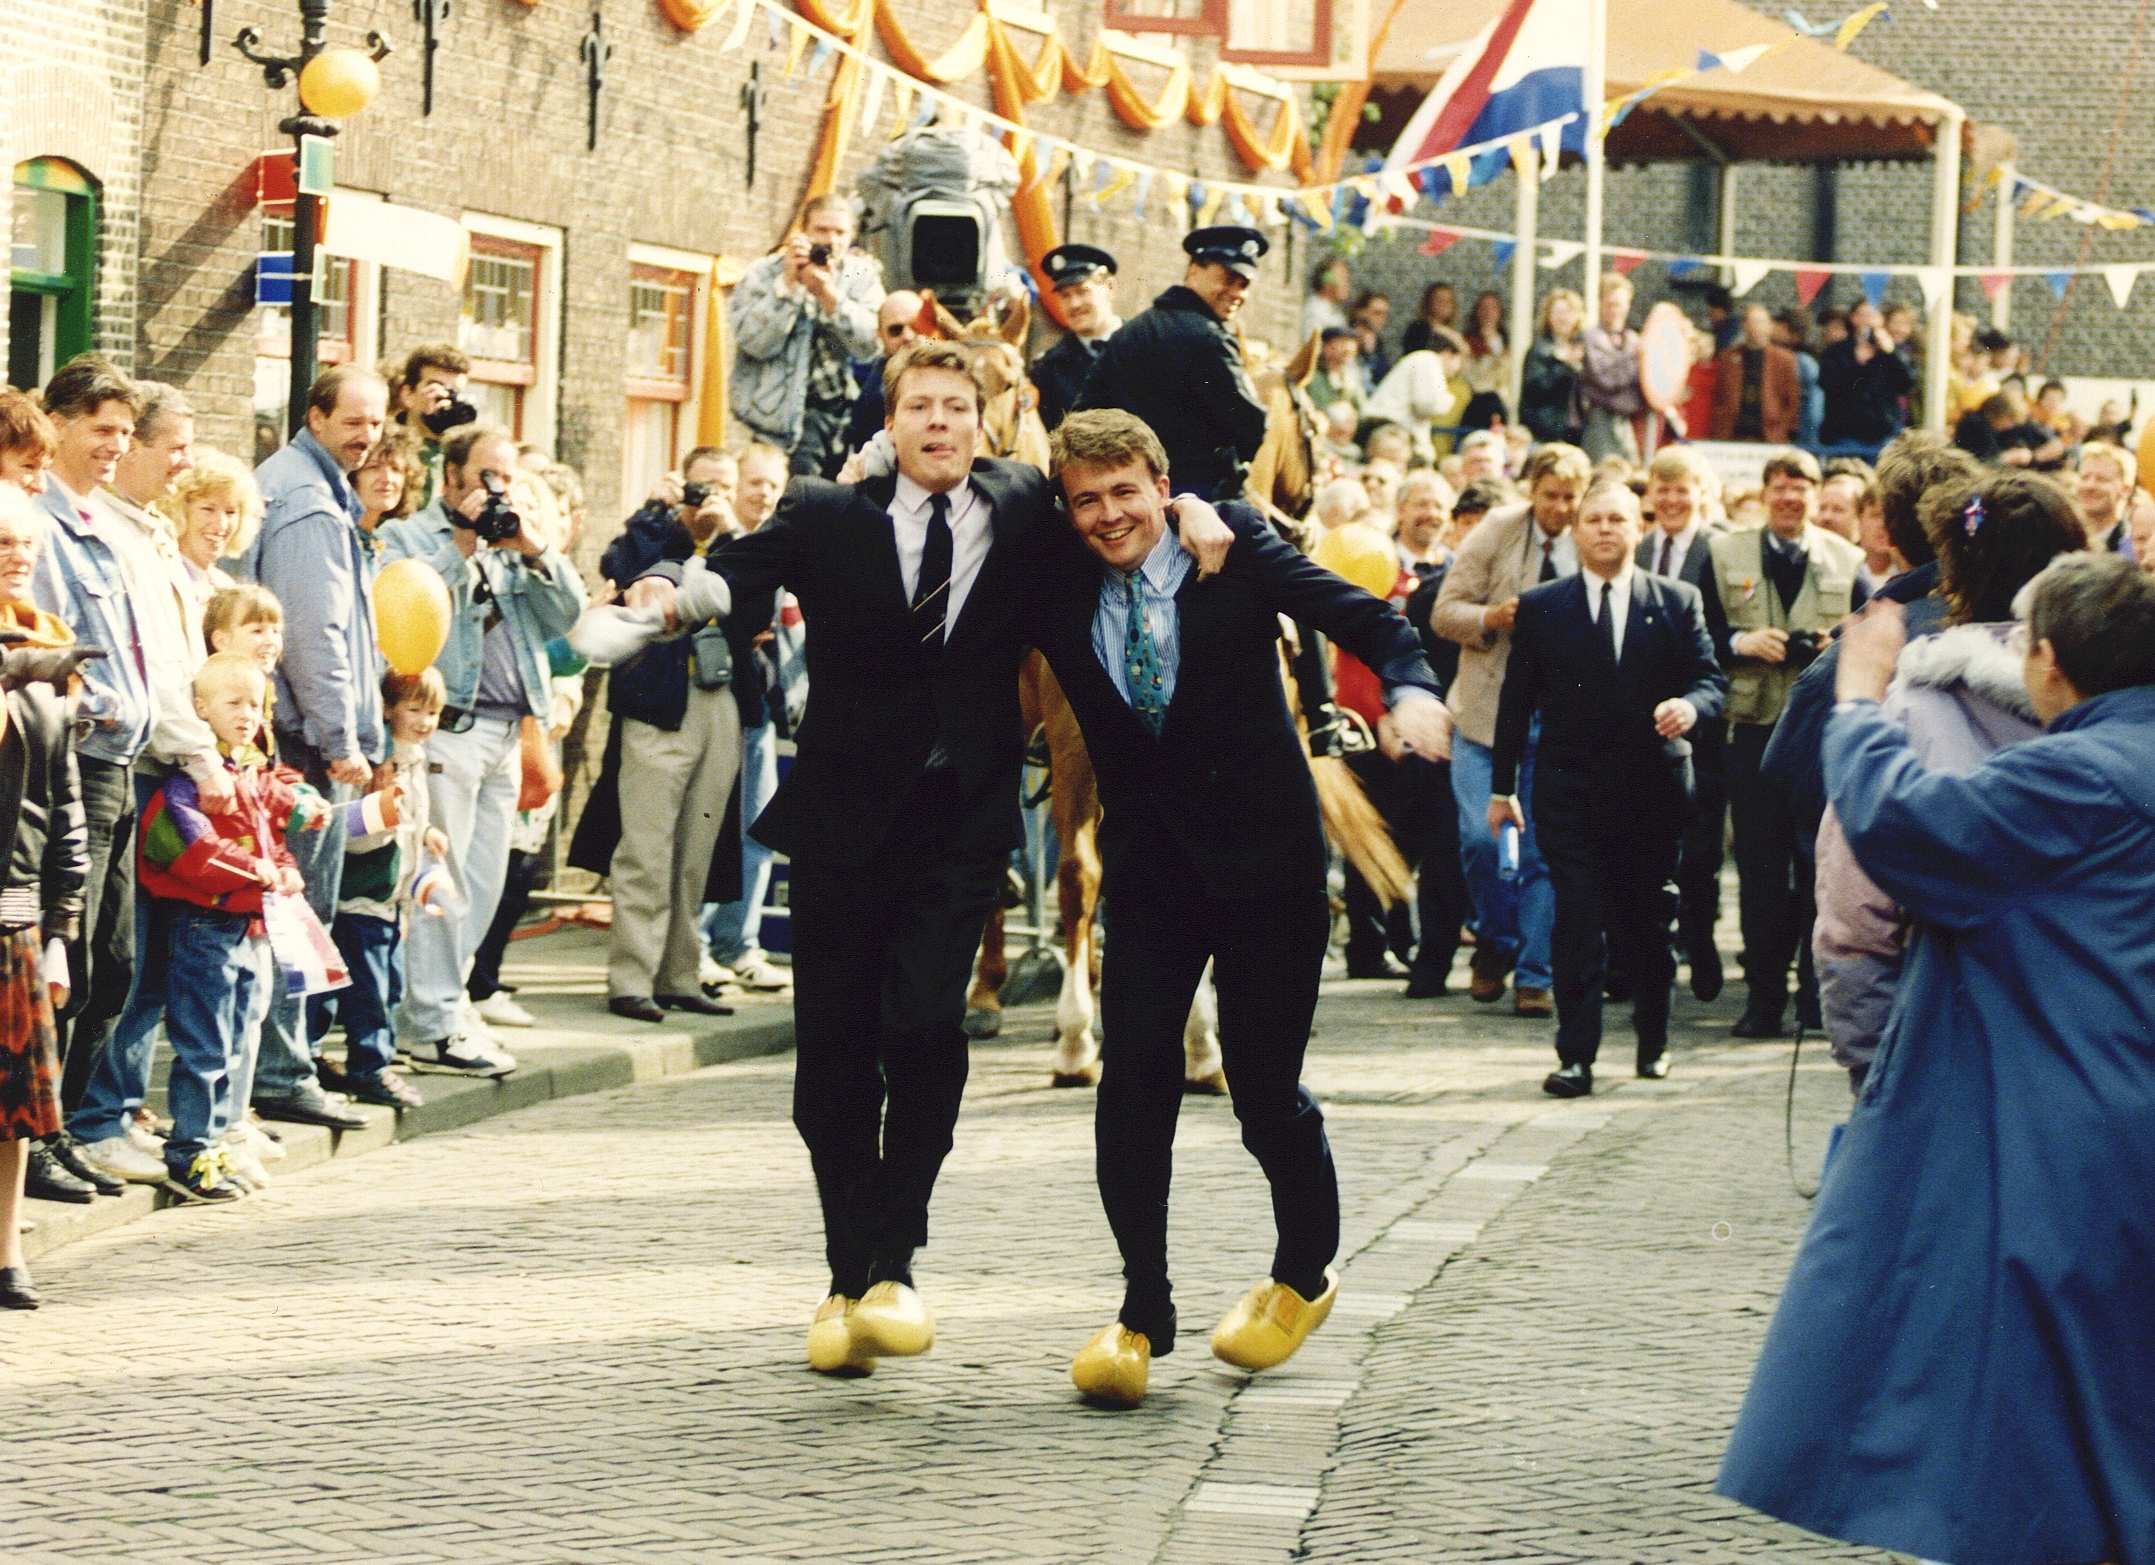 1992-04-30 12:00:00 Twee opvallende Hollandse jongens vieren Koninginnedag met een klompendans in Overschie: de prinsen Constantijn (l) en Friso, nagestaand door de bevolking van de Rotterdamse wijk Overschie.